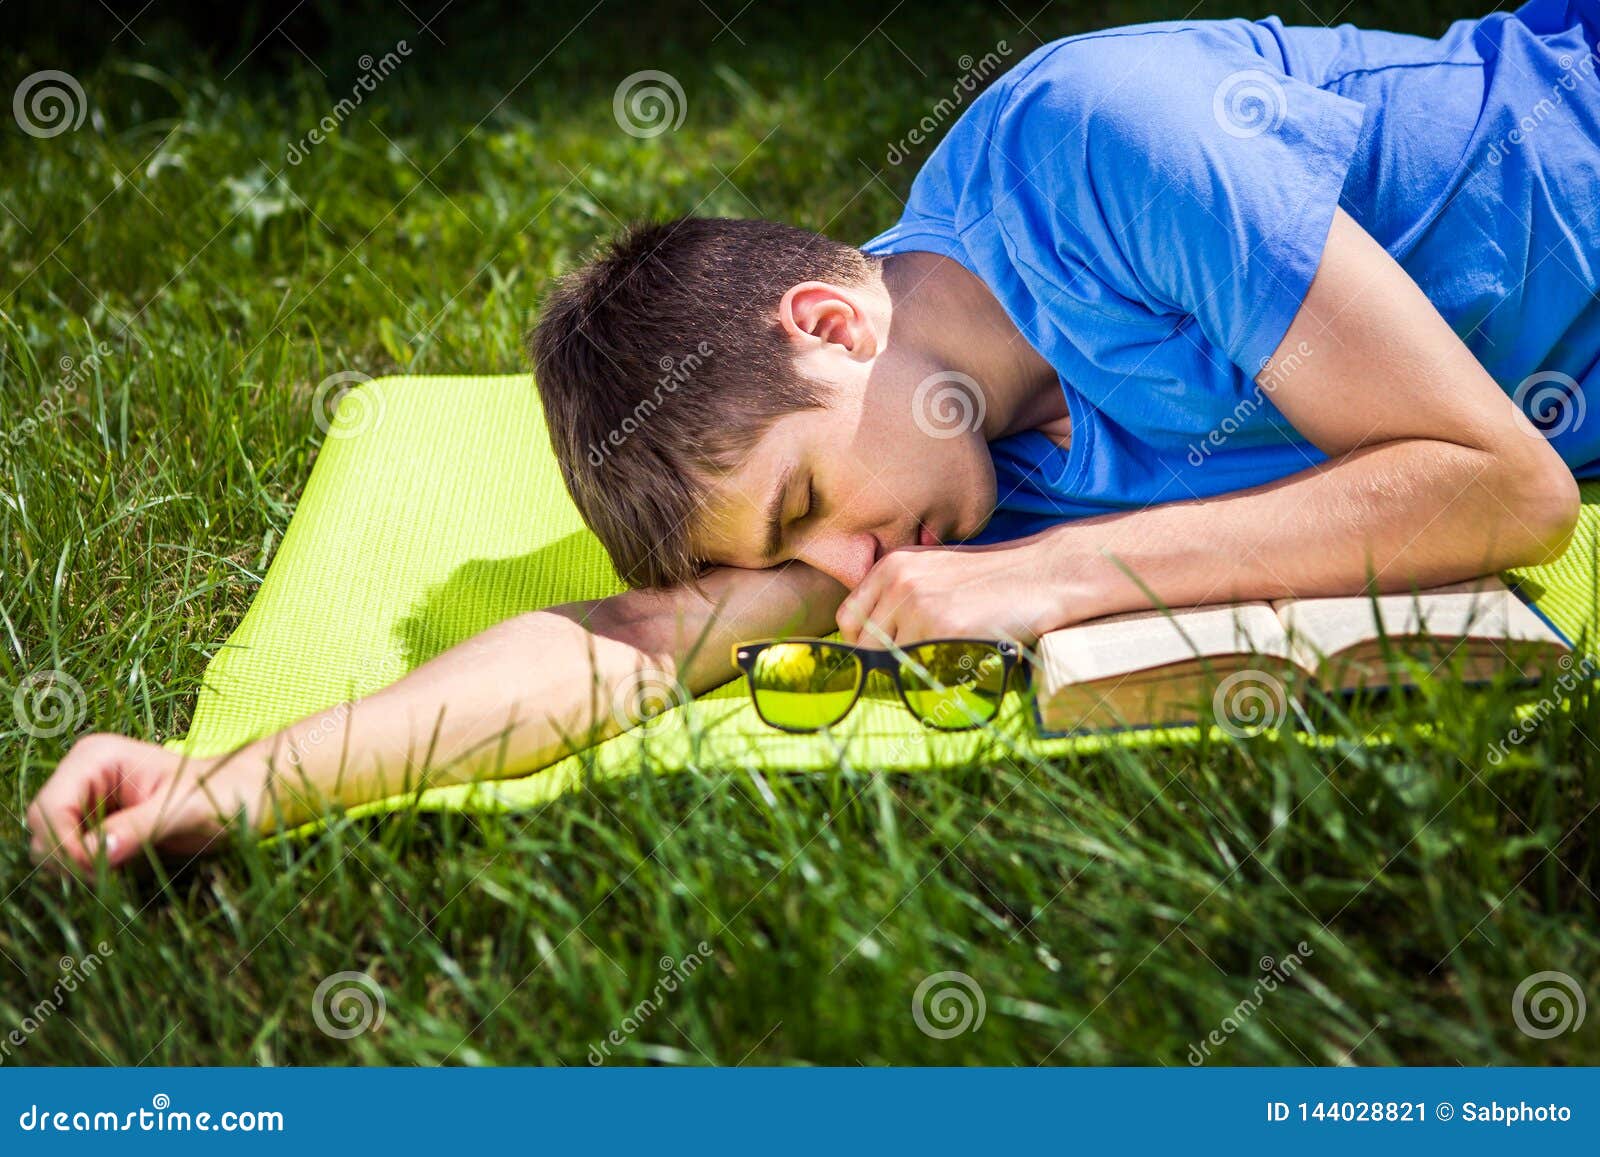 昏昏欲睡的男人看闹钟 库存照片. 图片 包括有 时间, 笨拙, 失眠, 唤醒, 被宣扬的, 时钟, 早晨 - 242052856